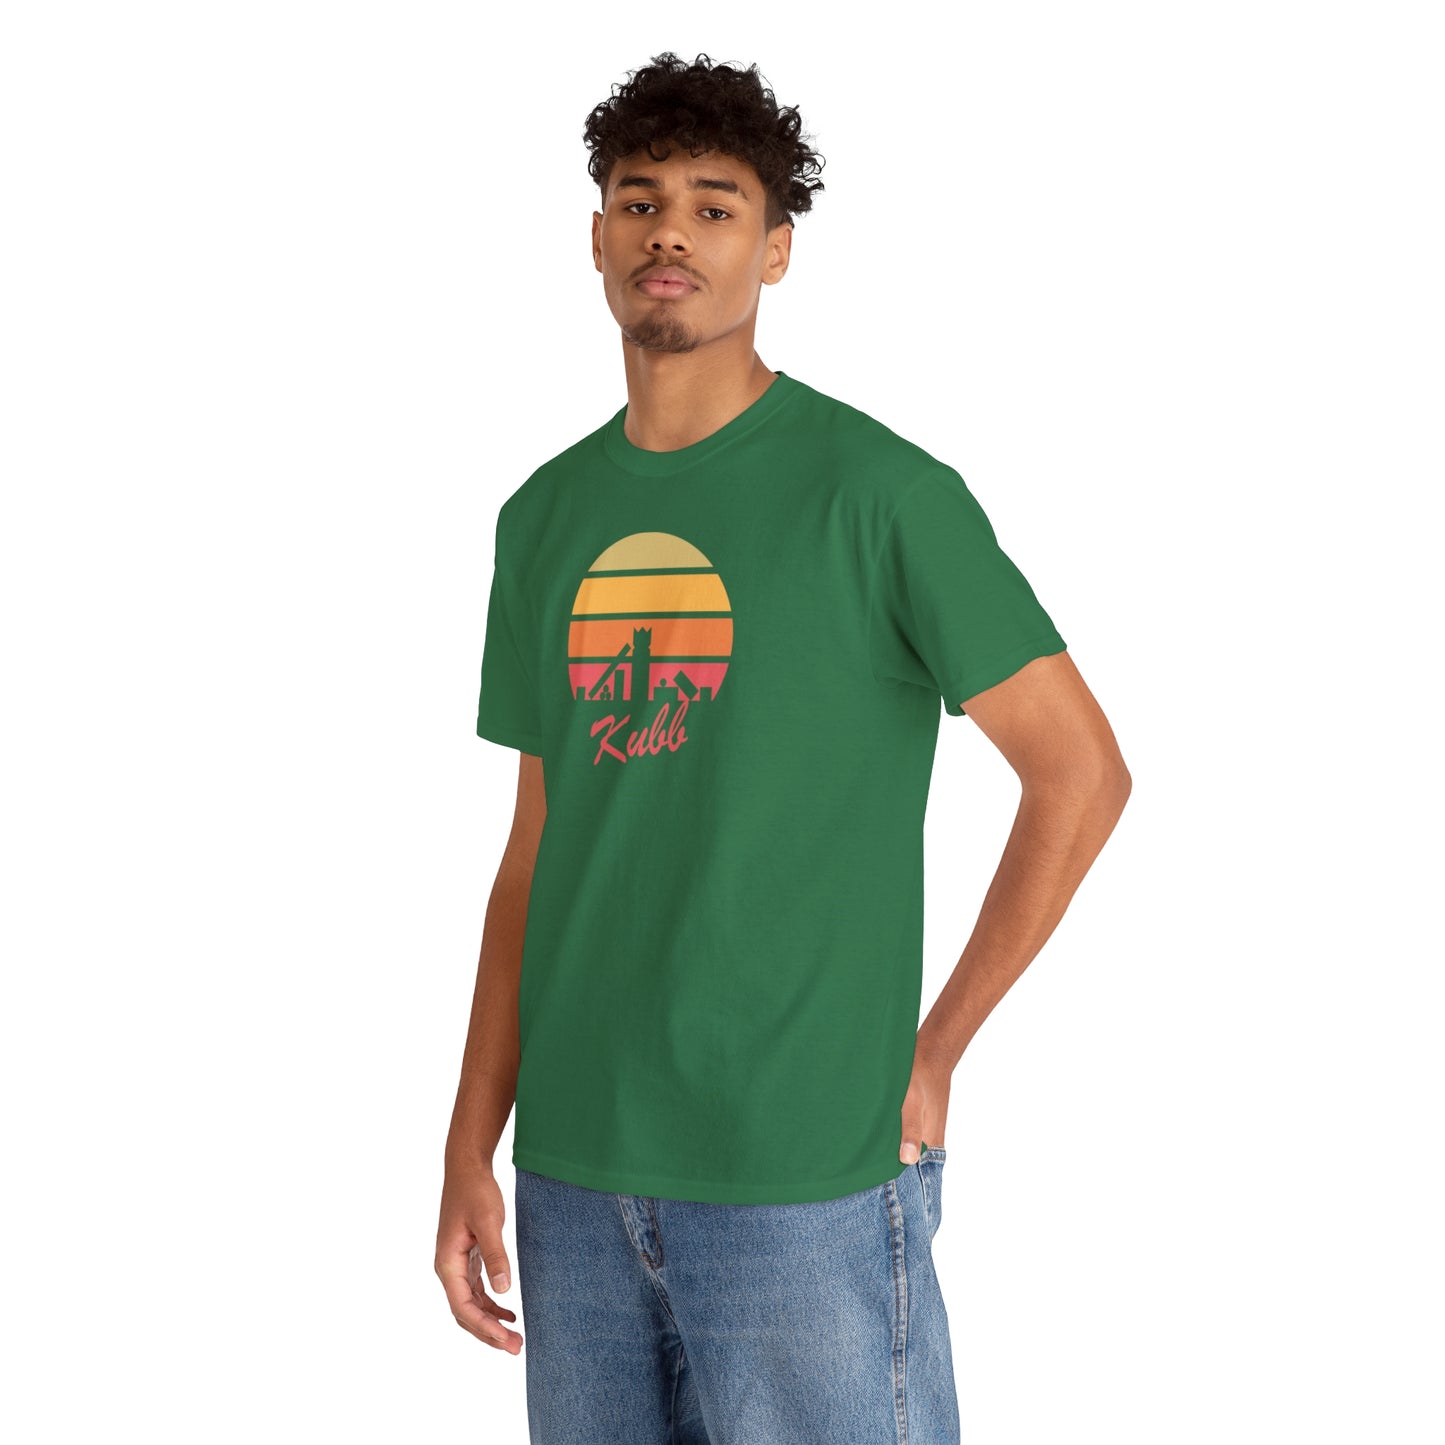 Retro Kubb Yard Game T Shirt Unisex Heavy Cotton Kubb Yard Game T-Shirt